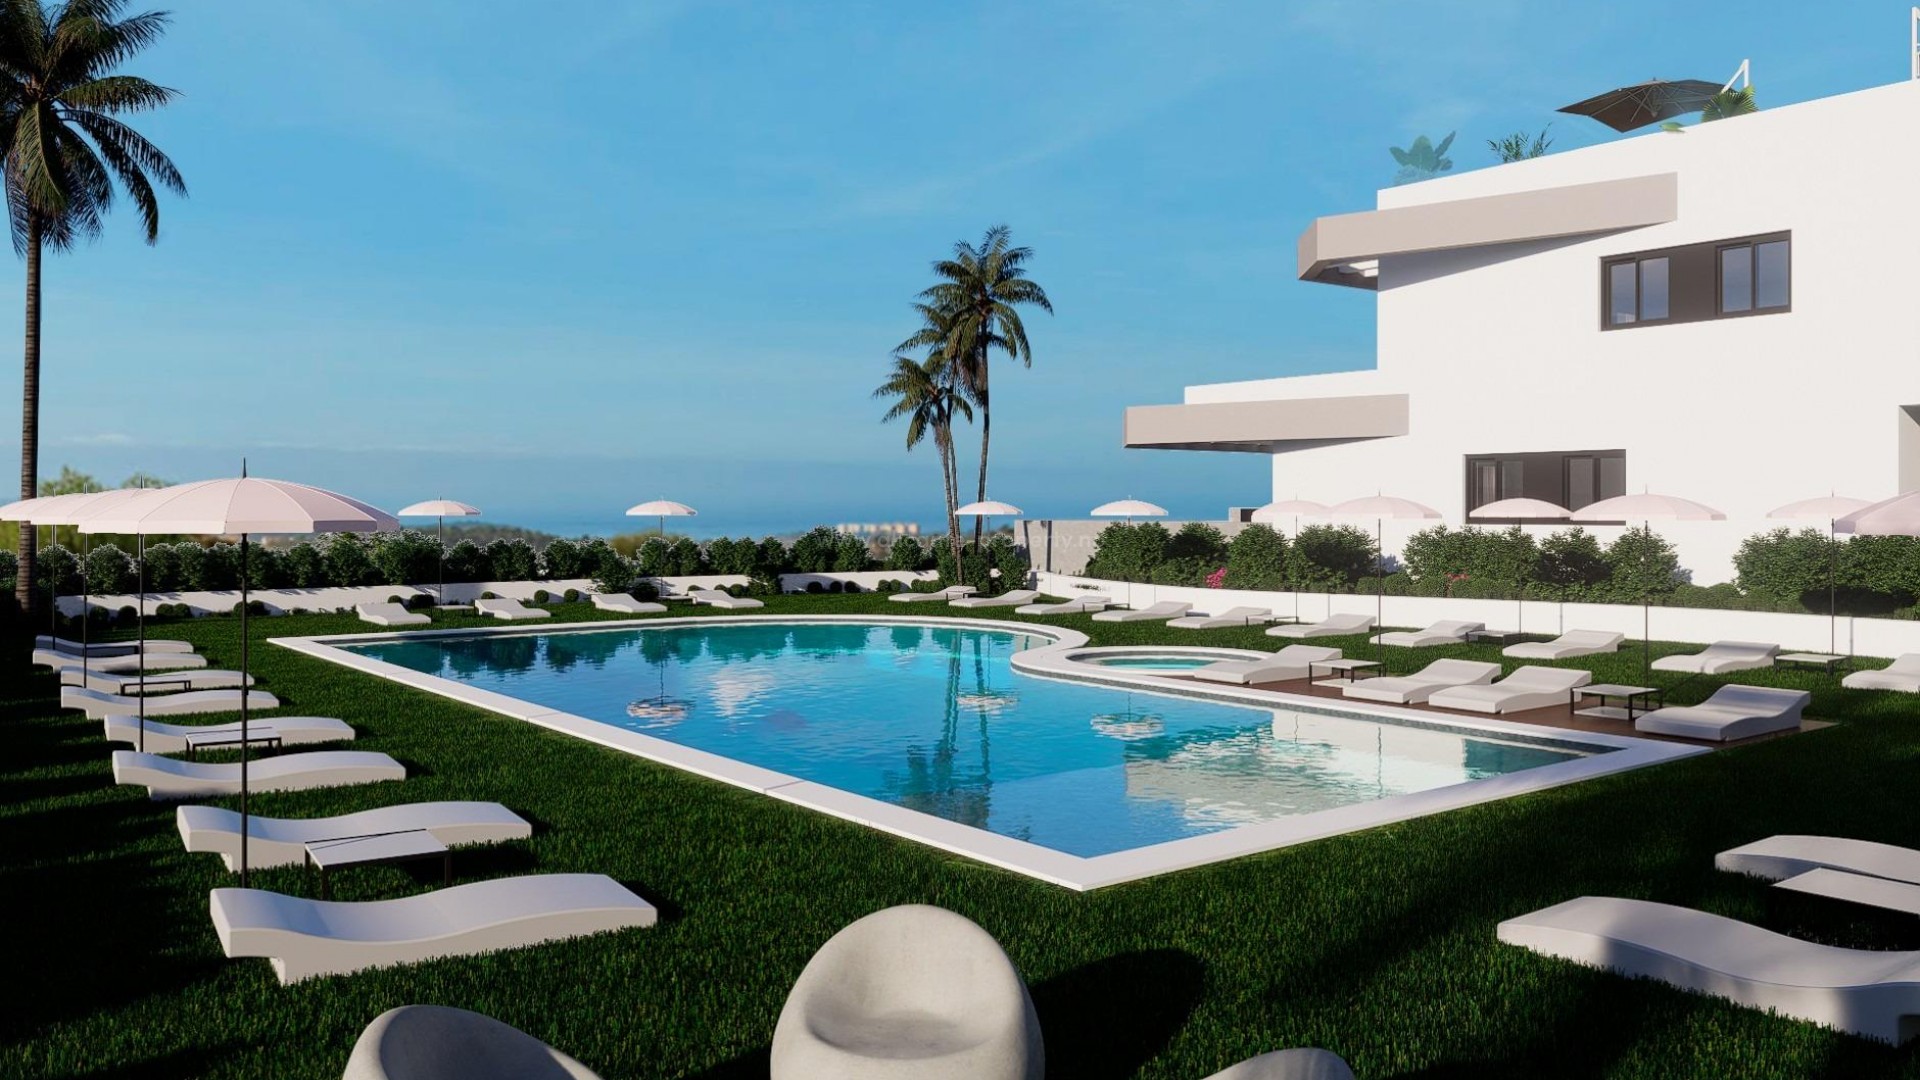 Eksklusivt boligkompleks med høy standard i Balcon de Finestrat med moderne bungalows, 2/3 soverom, 2 bad, felles svømmebasseng, parkering